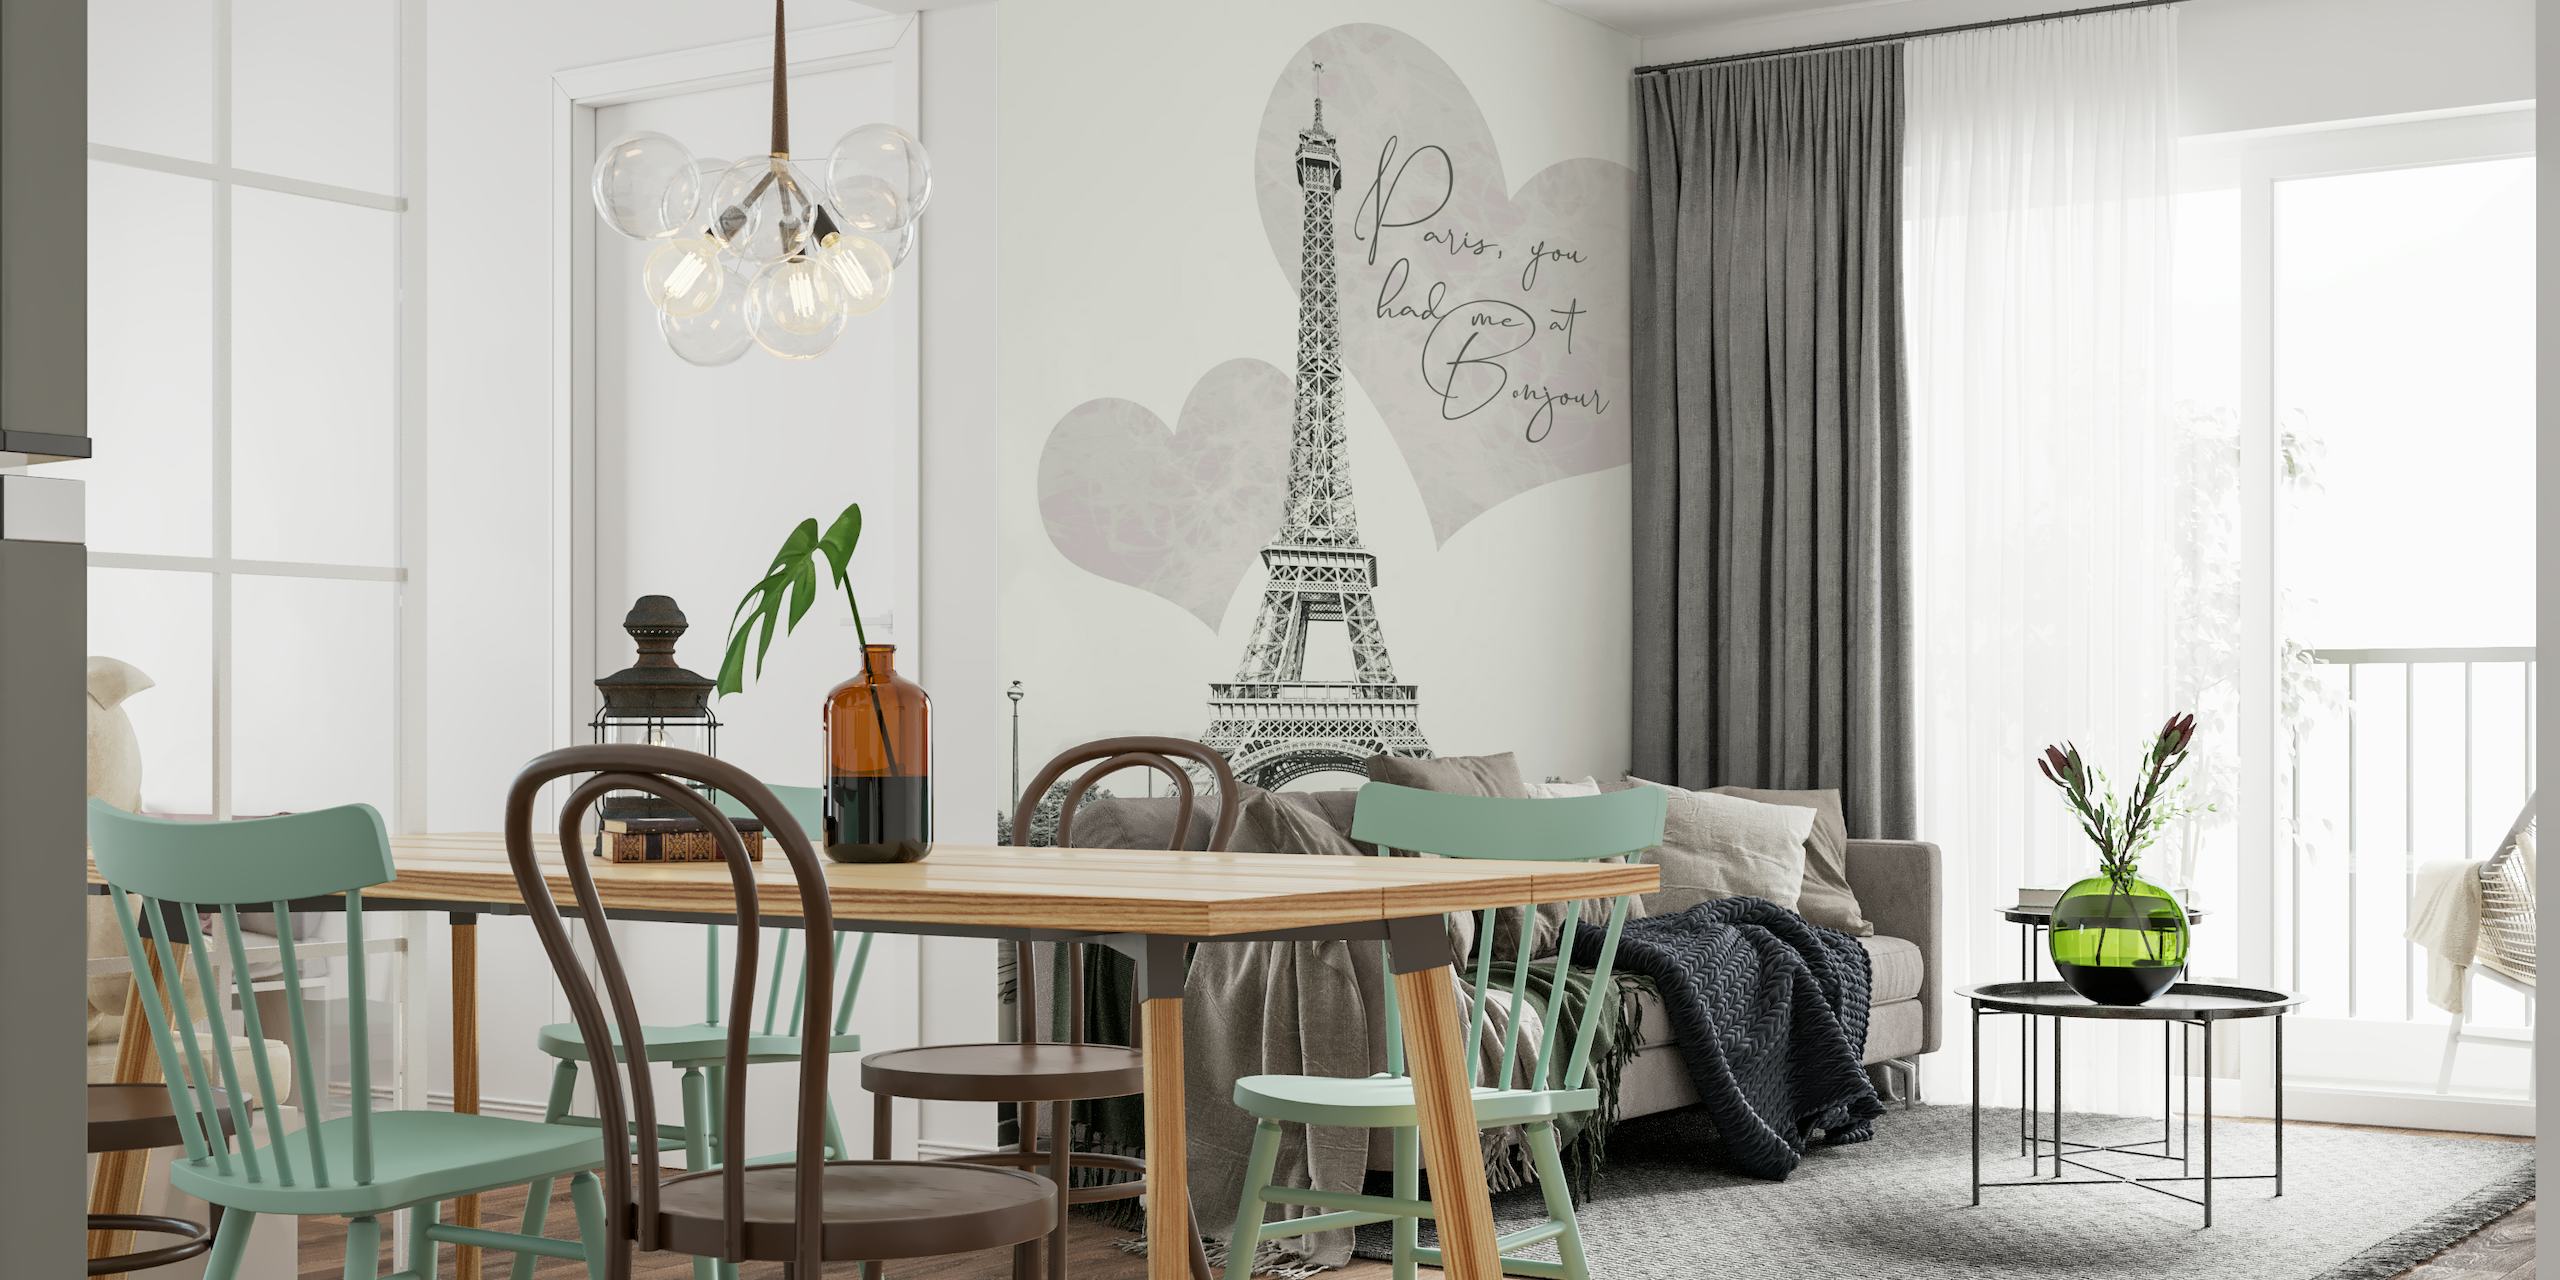 Eiffeltoren met romantische hartvormen en 'Paris, you had me at BONJOUR' quote muurschildering